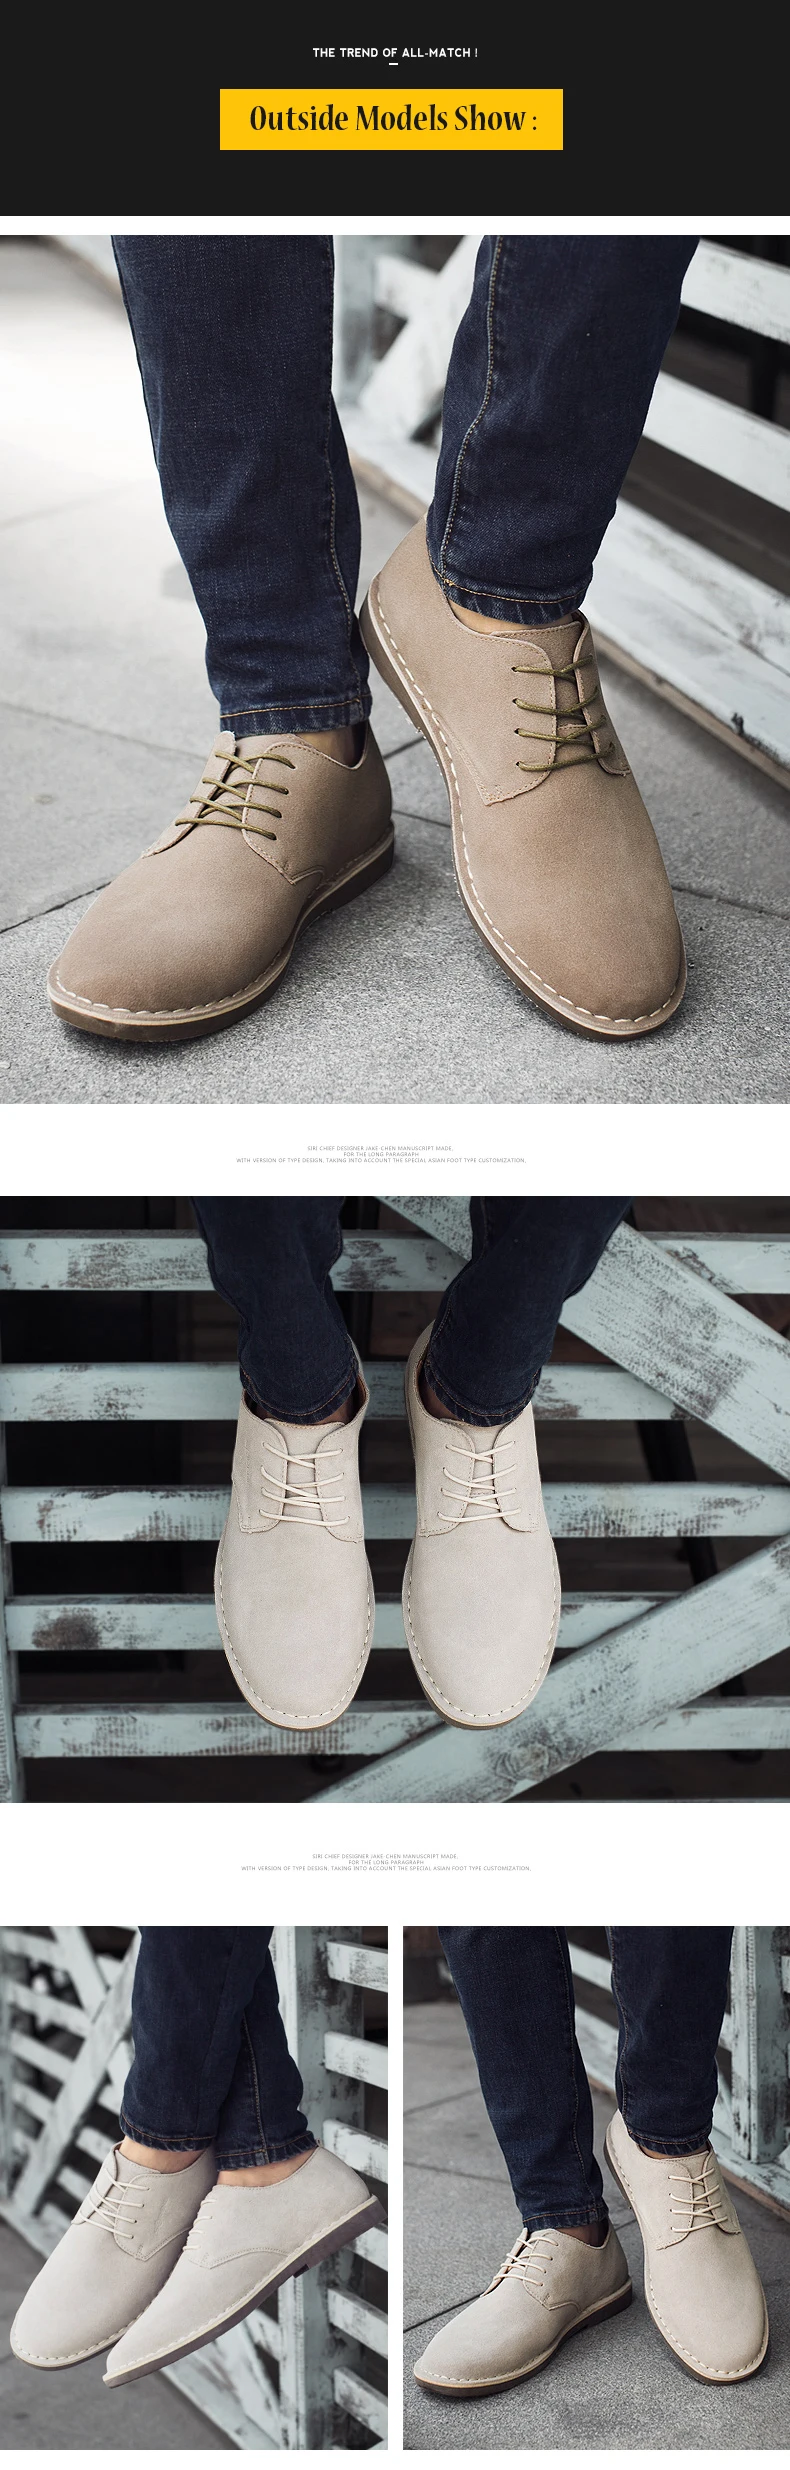 SERENE/6308 г.; Осенняя модная Высококачественная Мужская обувь из коровьей замши; популярная обувь в британском стиле с низким берцем на шнуровке; деловая повседневная обувь для пустыни